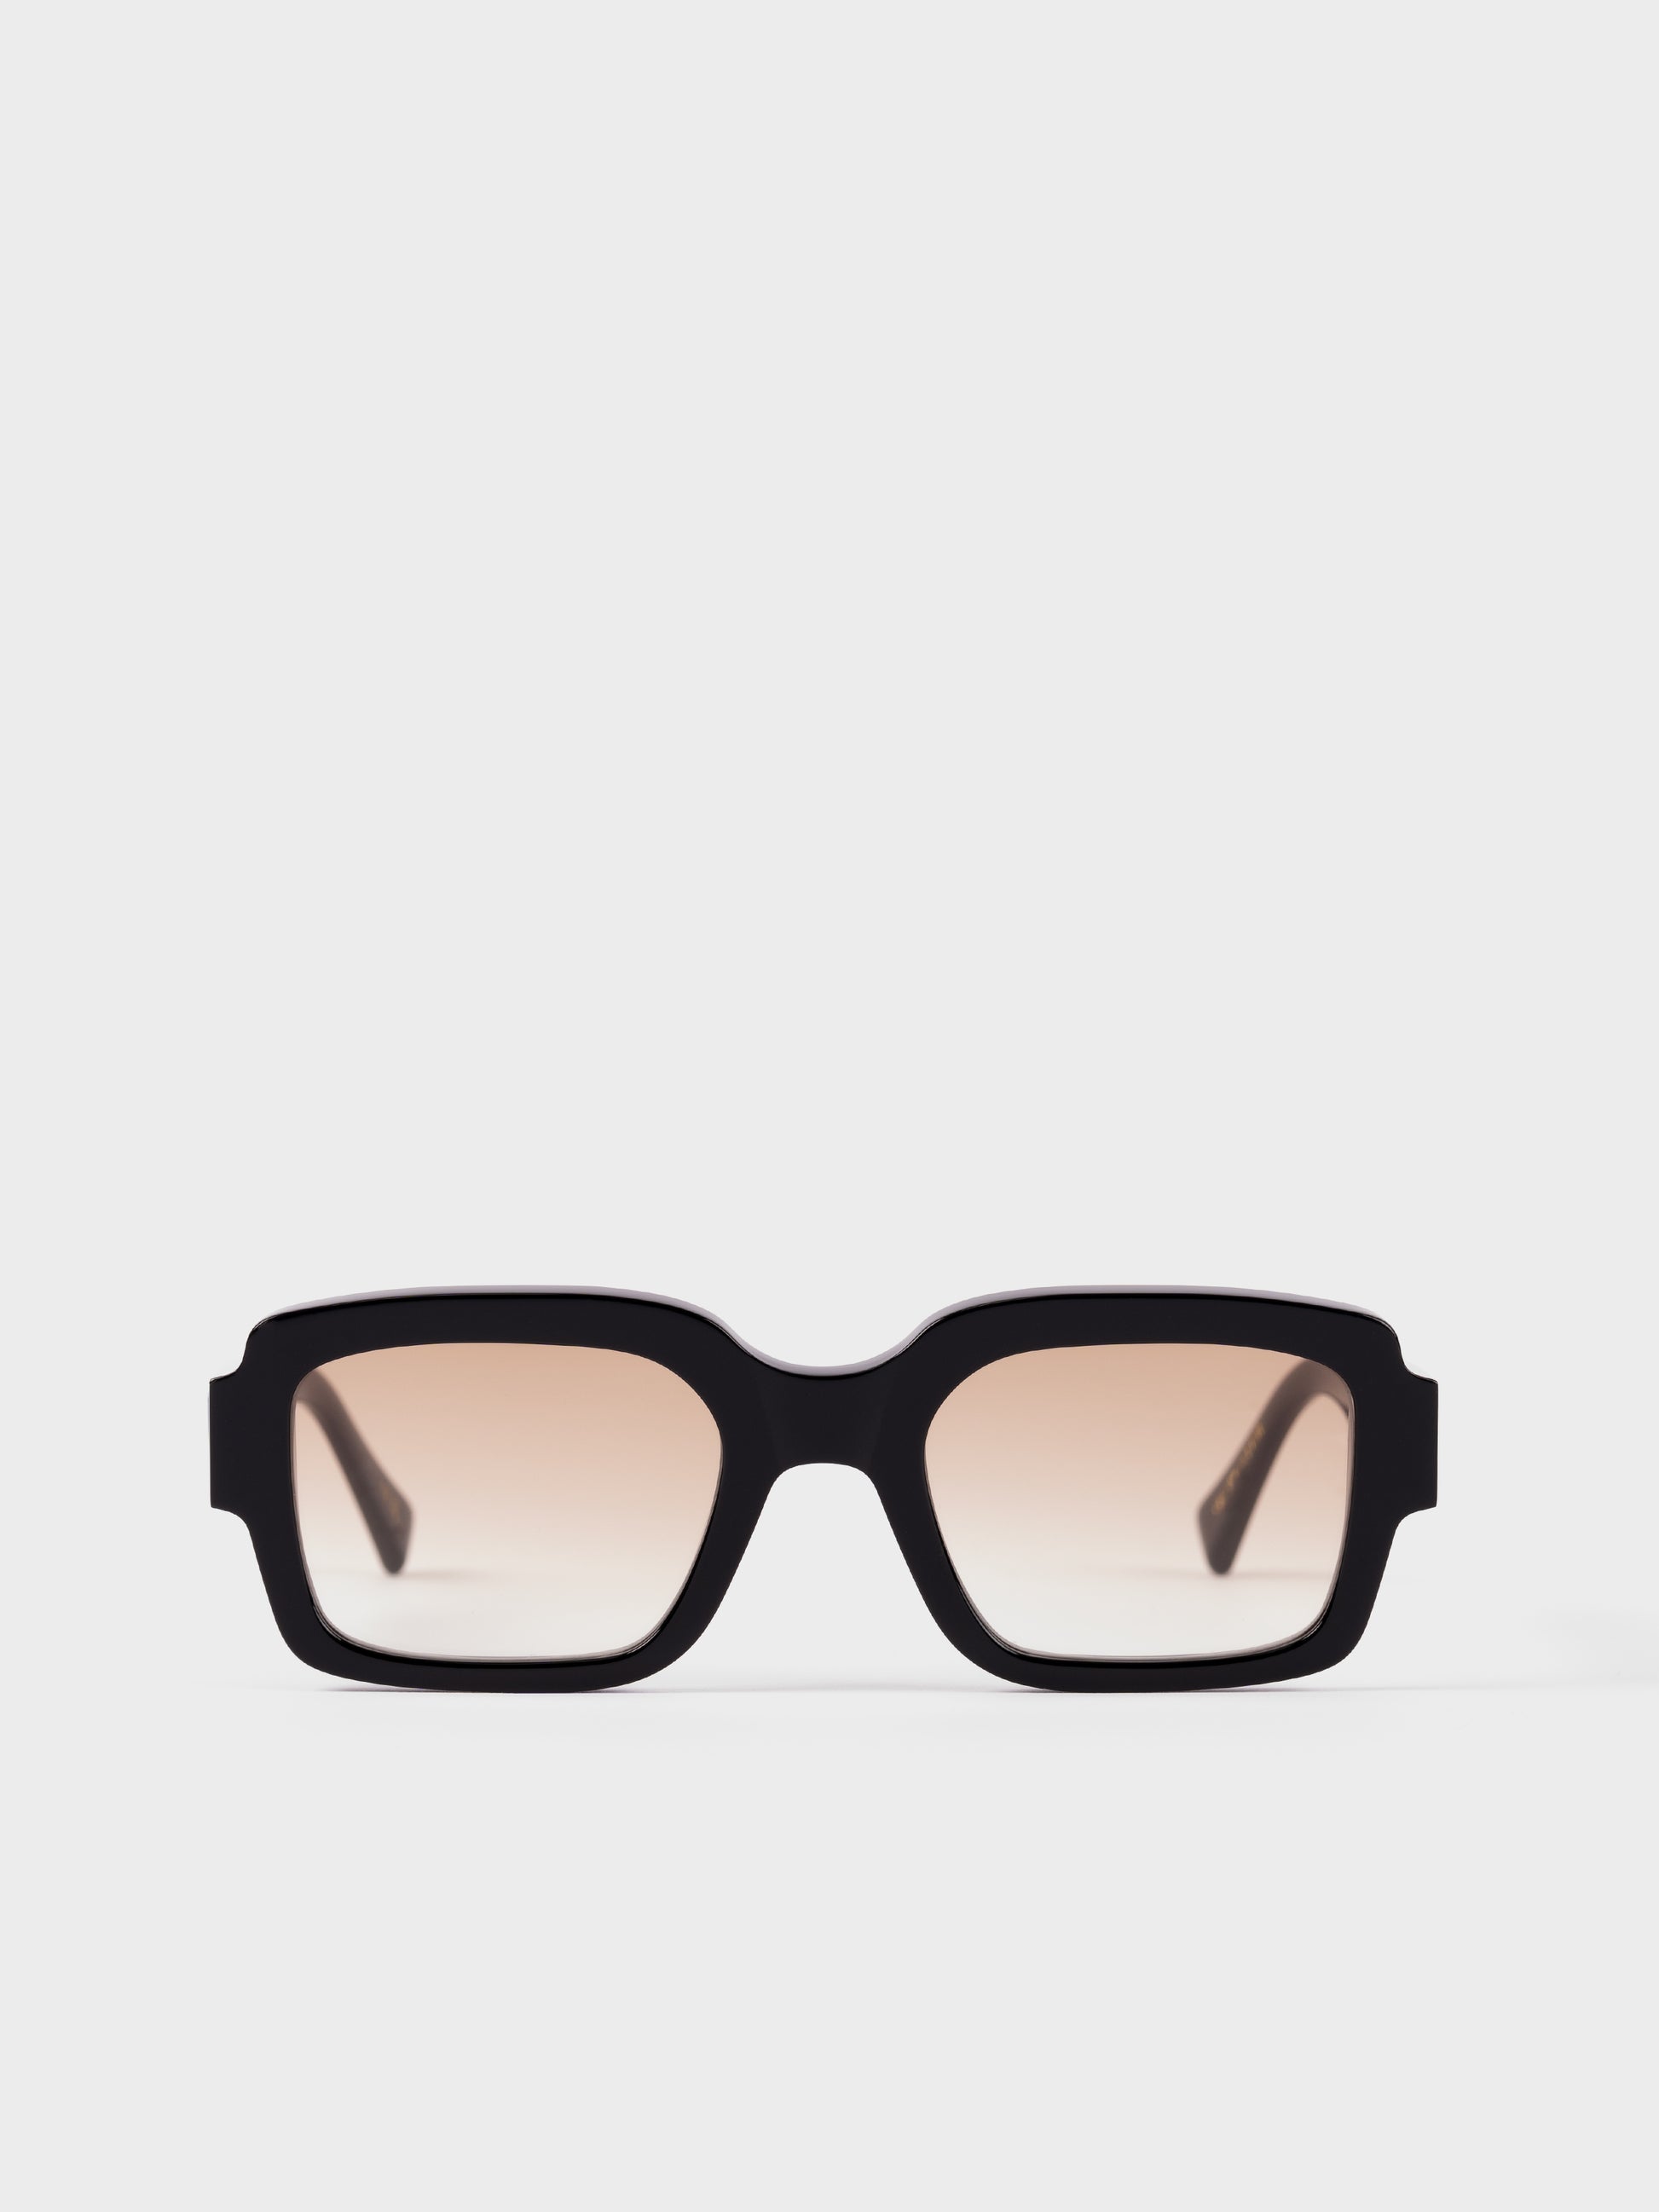 Monokel Sunglasses - Apollo Black/Brown Lens